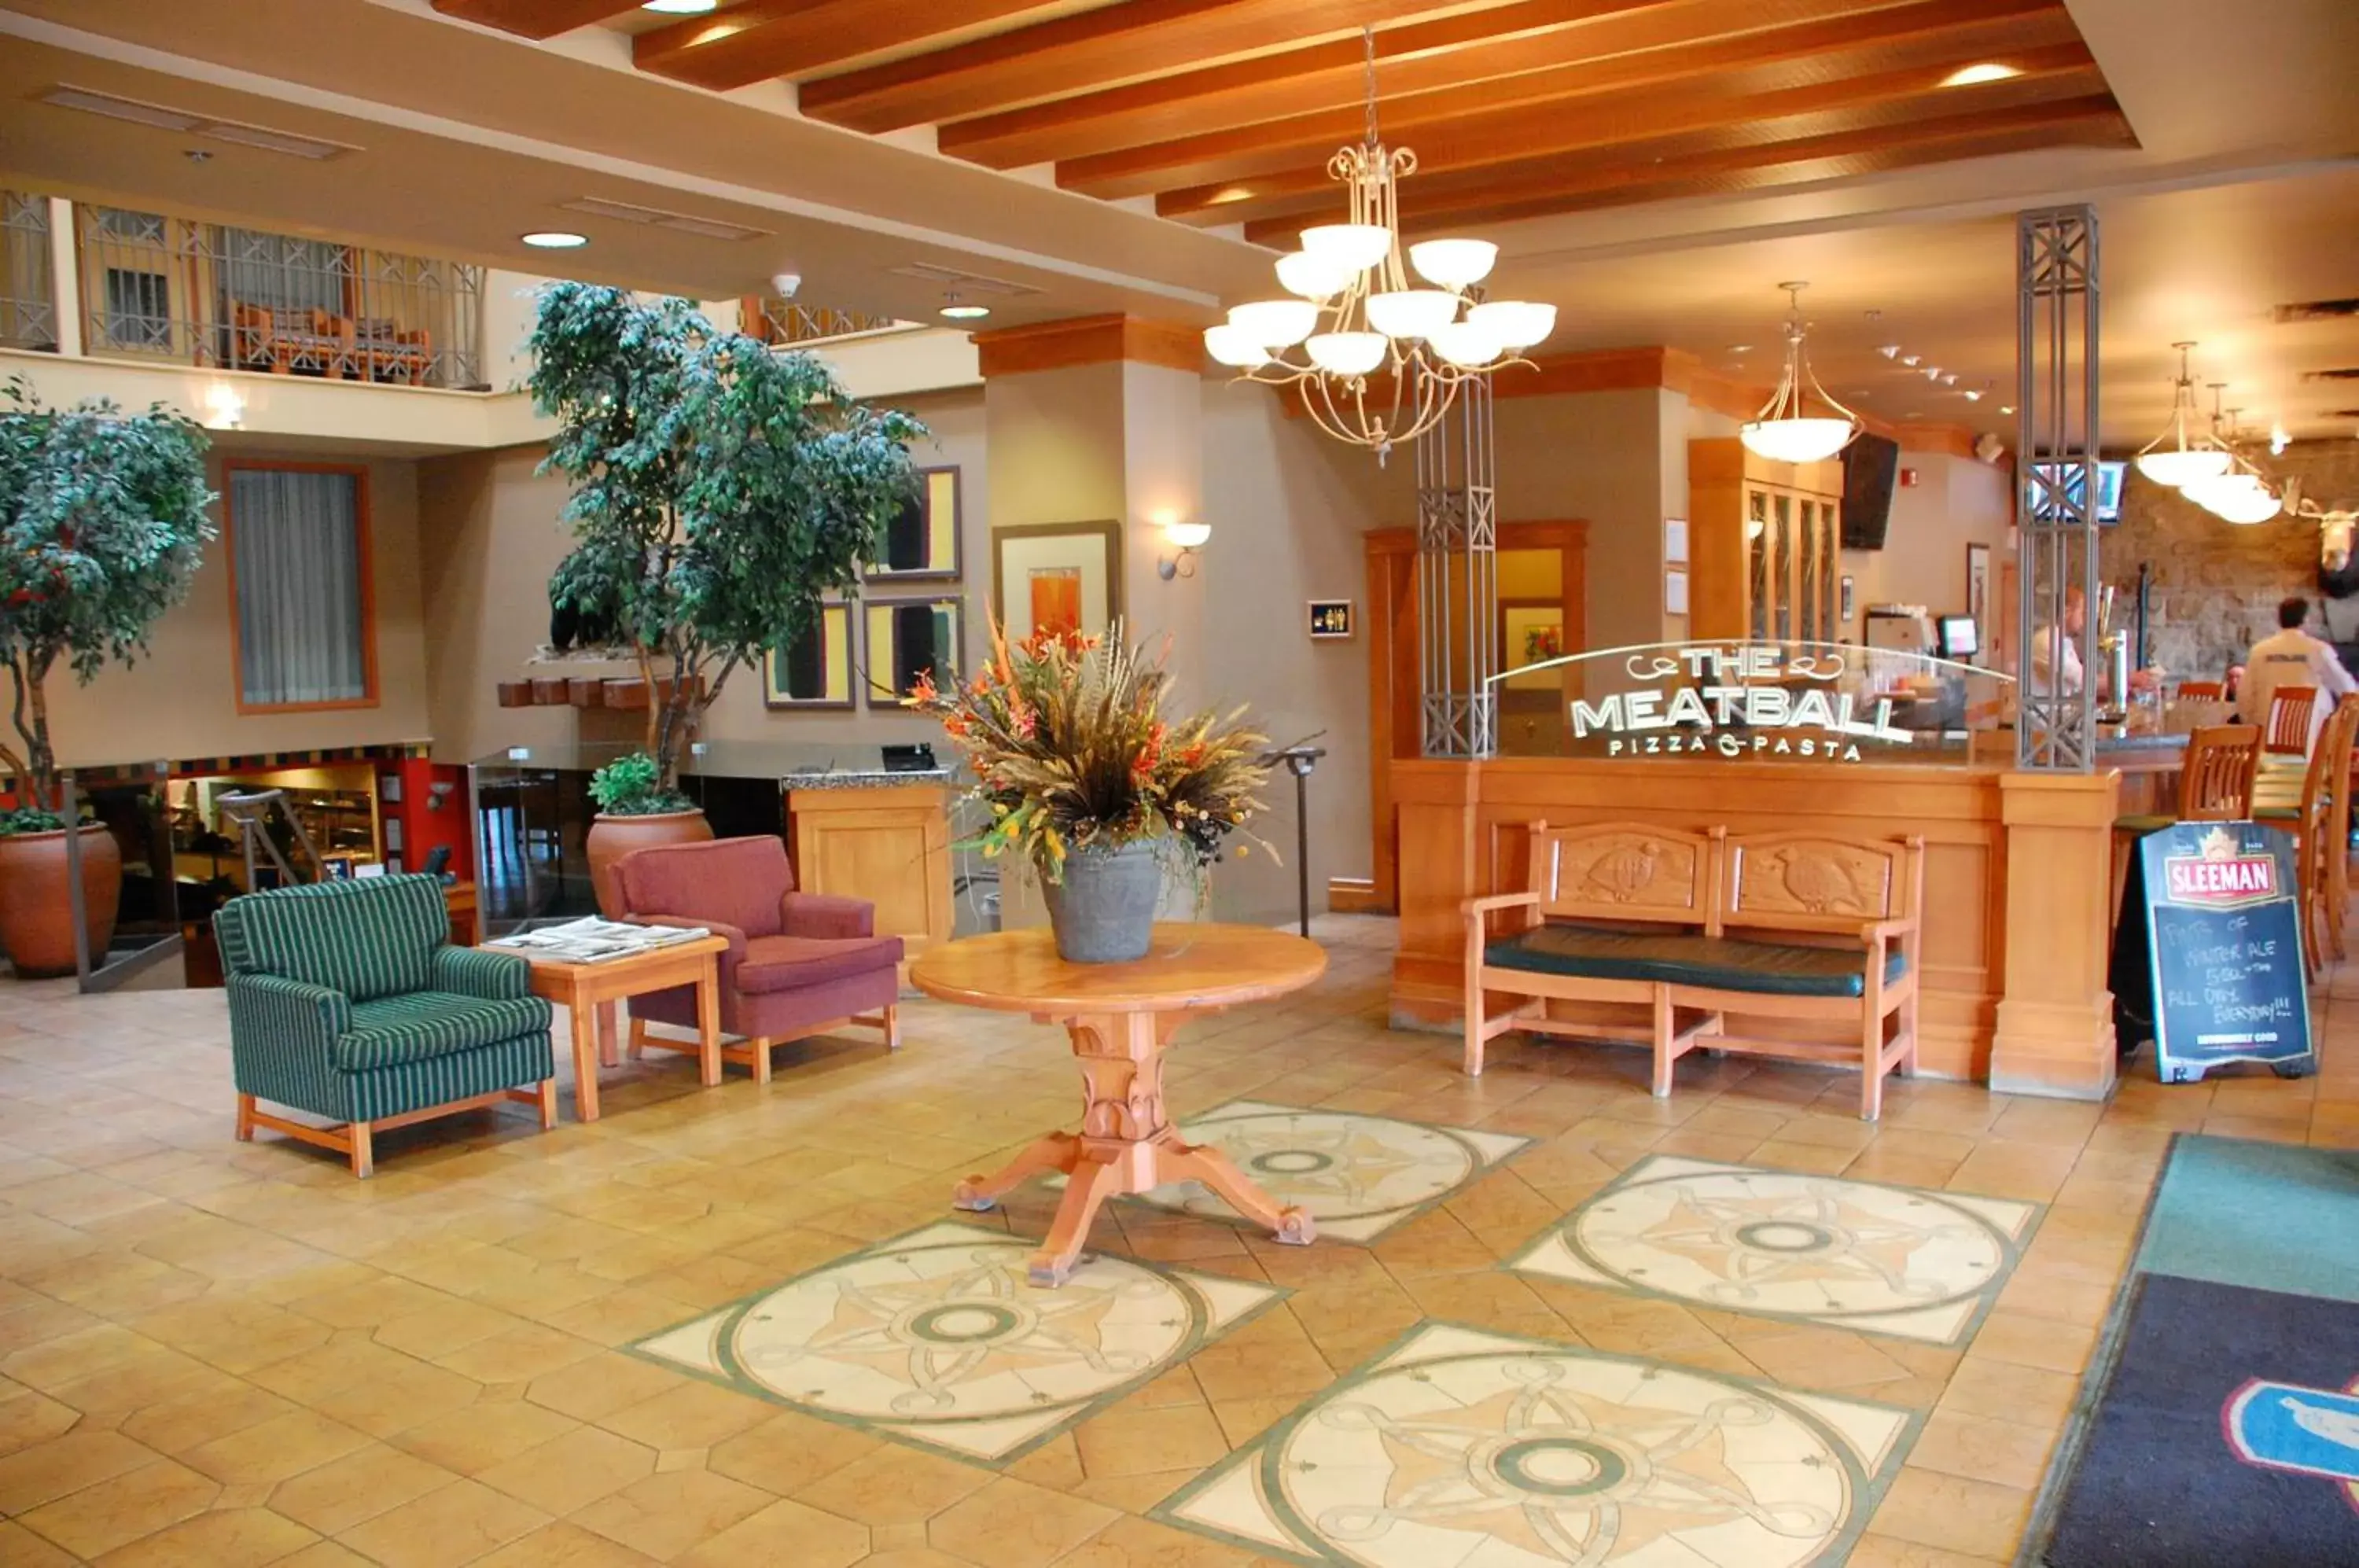 Lobby or reception in Banff Ptarmigan Inn